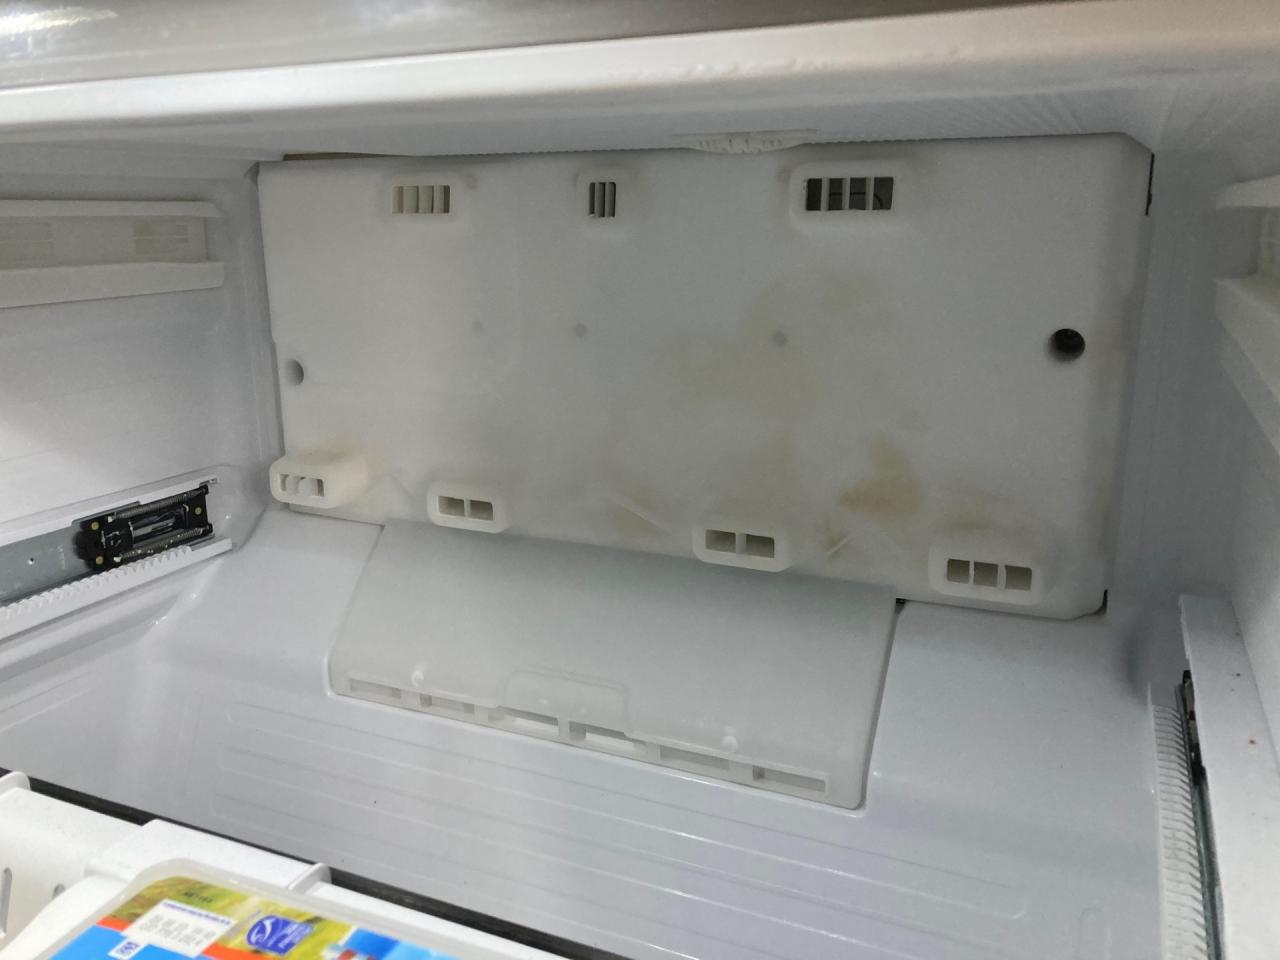 Comment réinitialiser le voyant du filtre de mon réfrigérateur ?